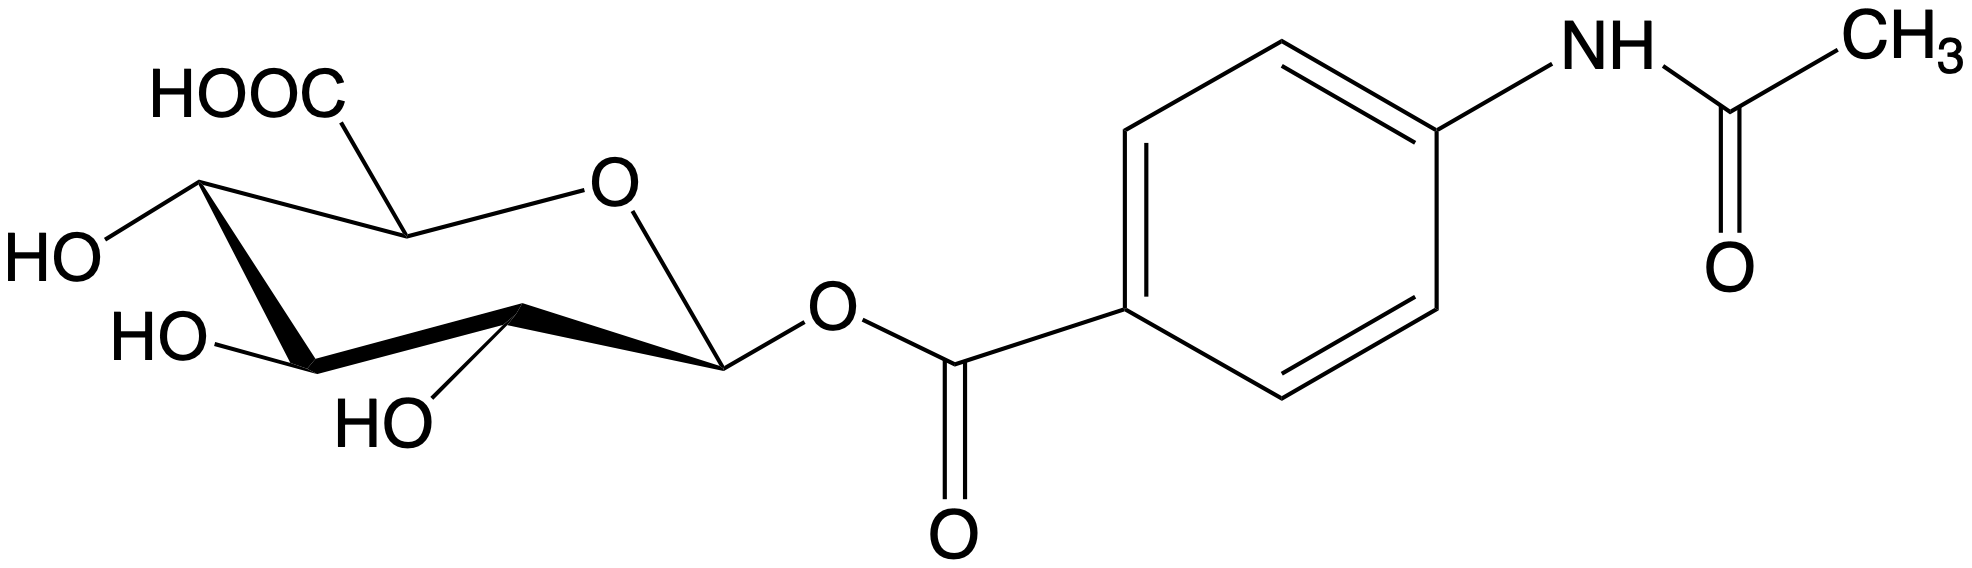 Acedoben-acyl-bD-glucuronide, BIOSYNTH (MA44744)